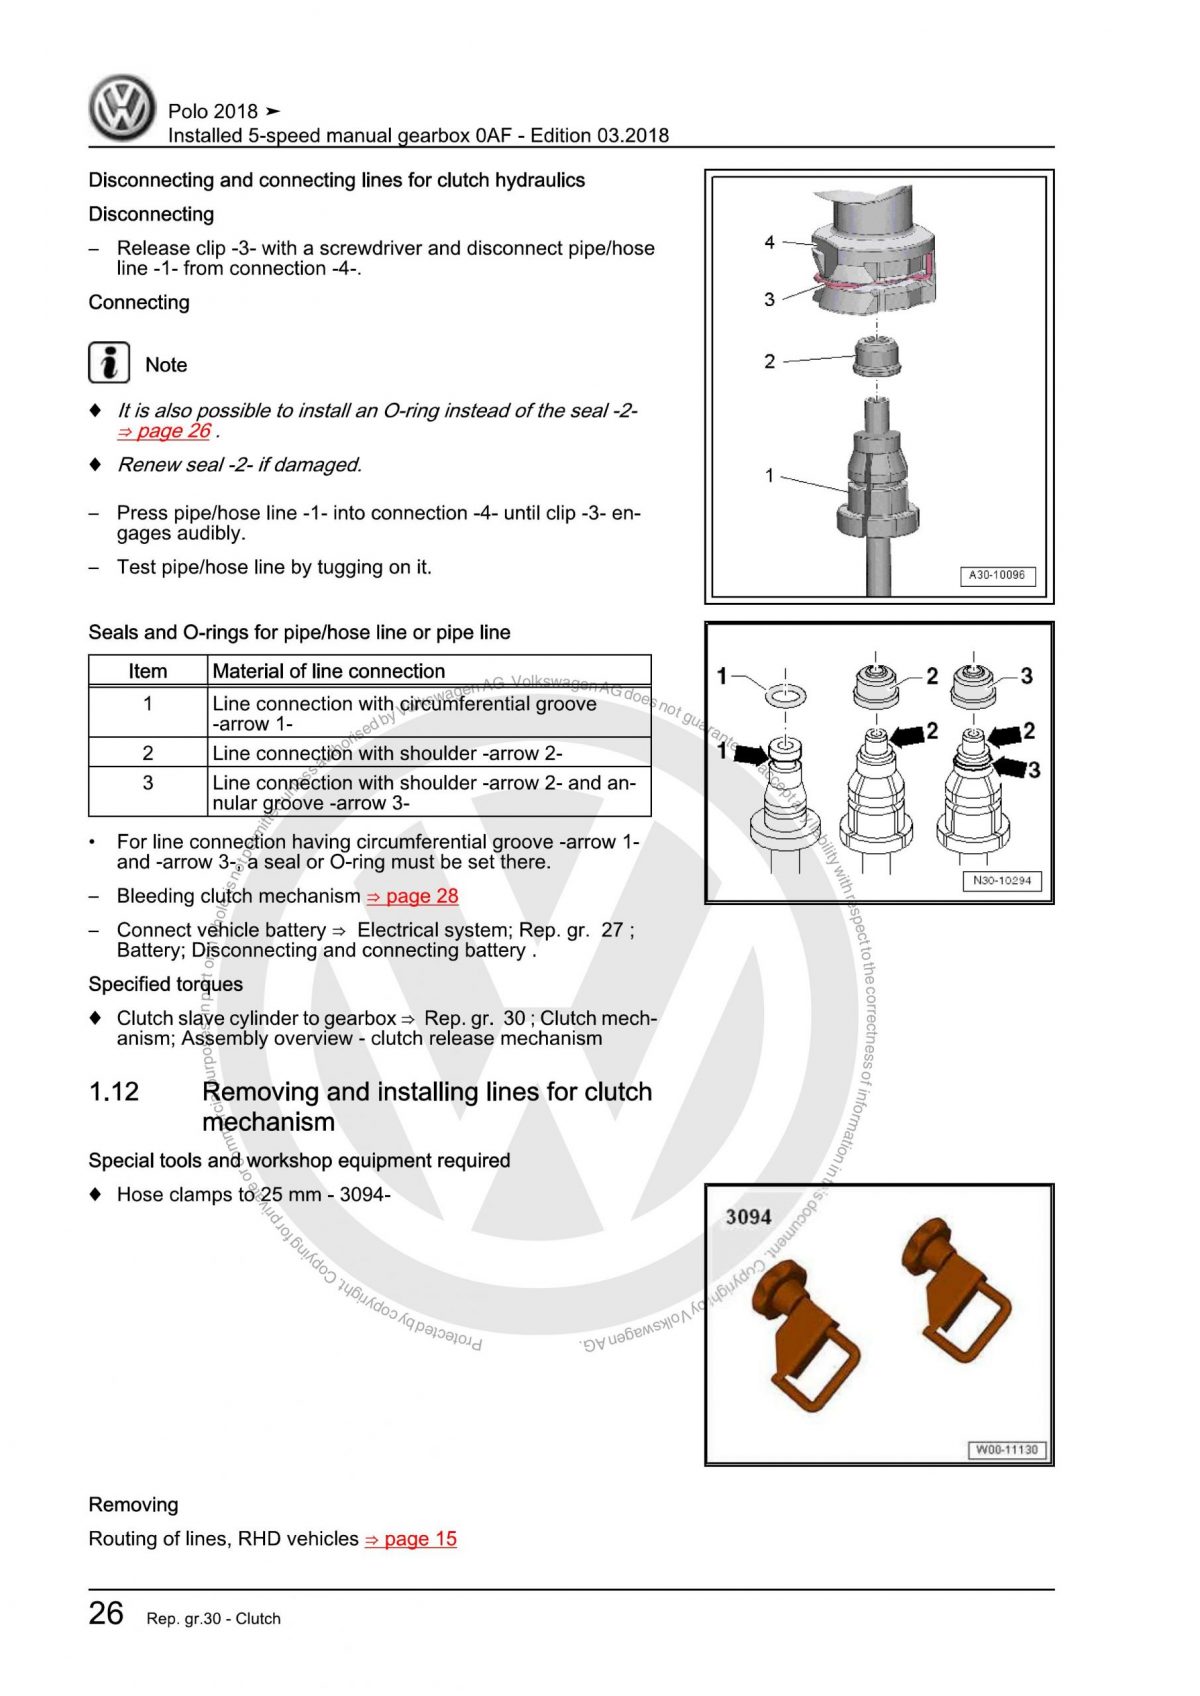 VW 5-Speed Manual Gearbox 0AF OEM Workshop Manual